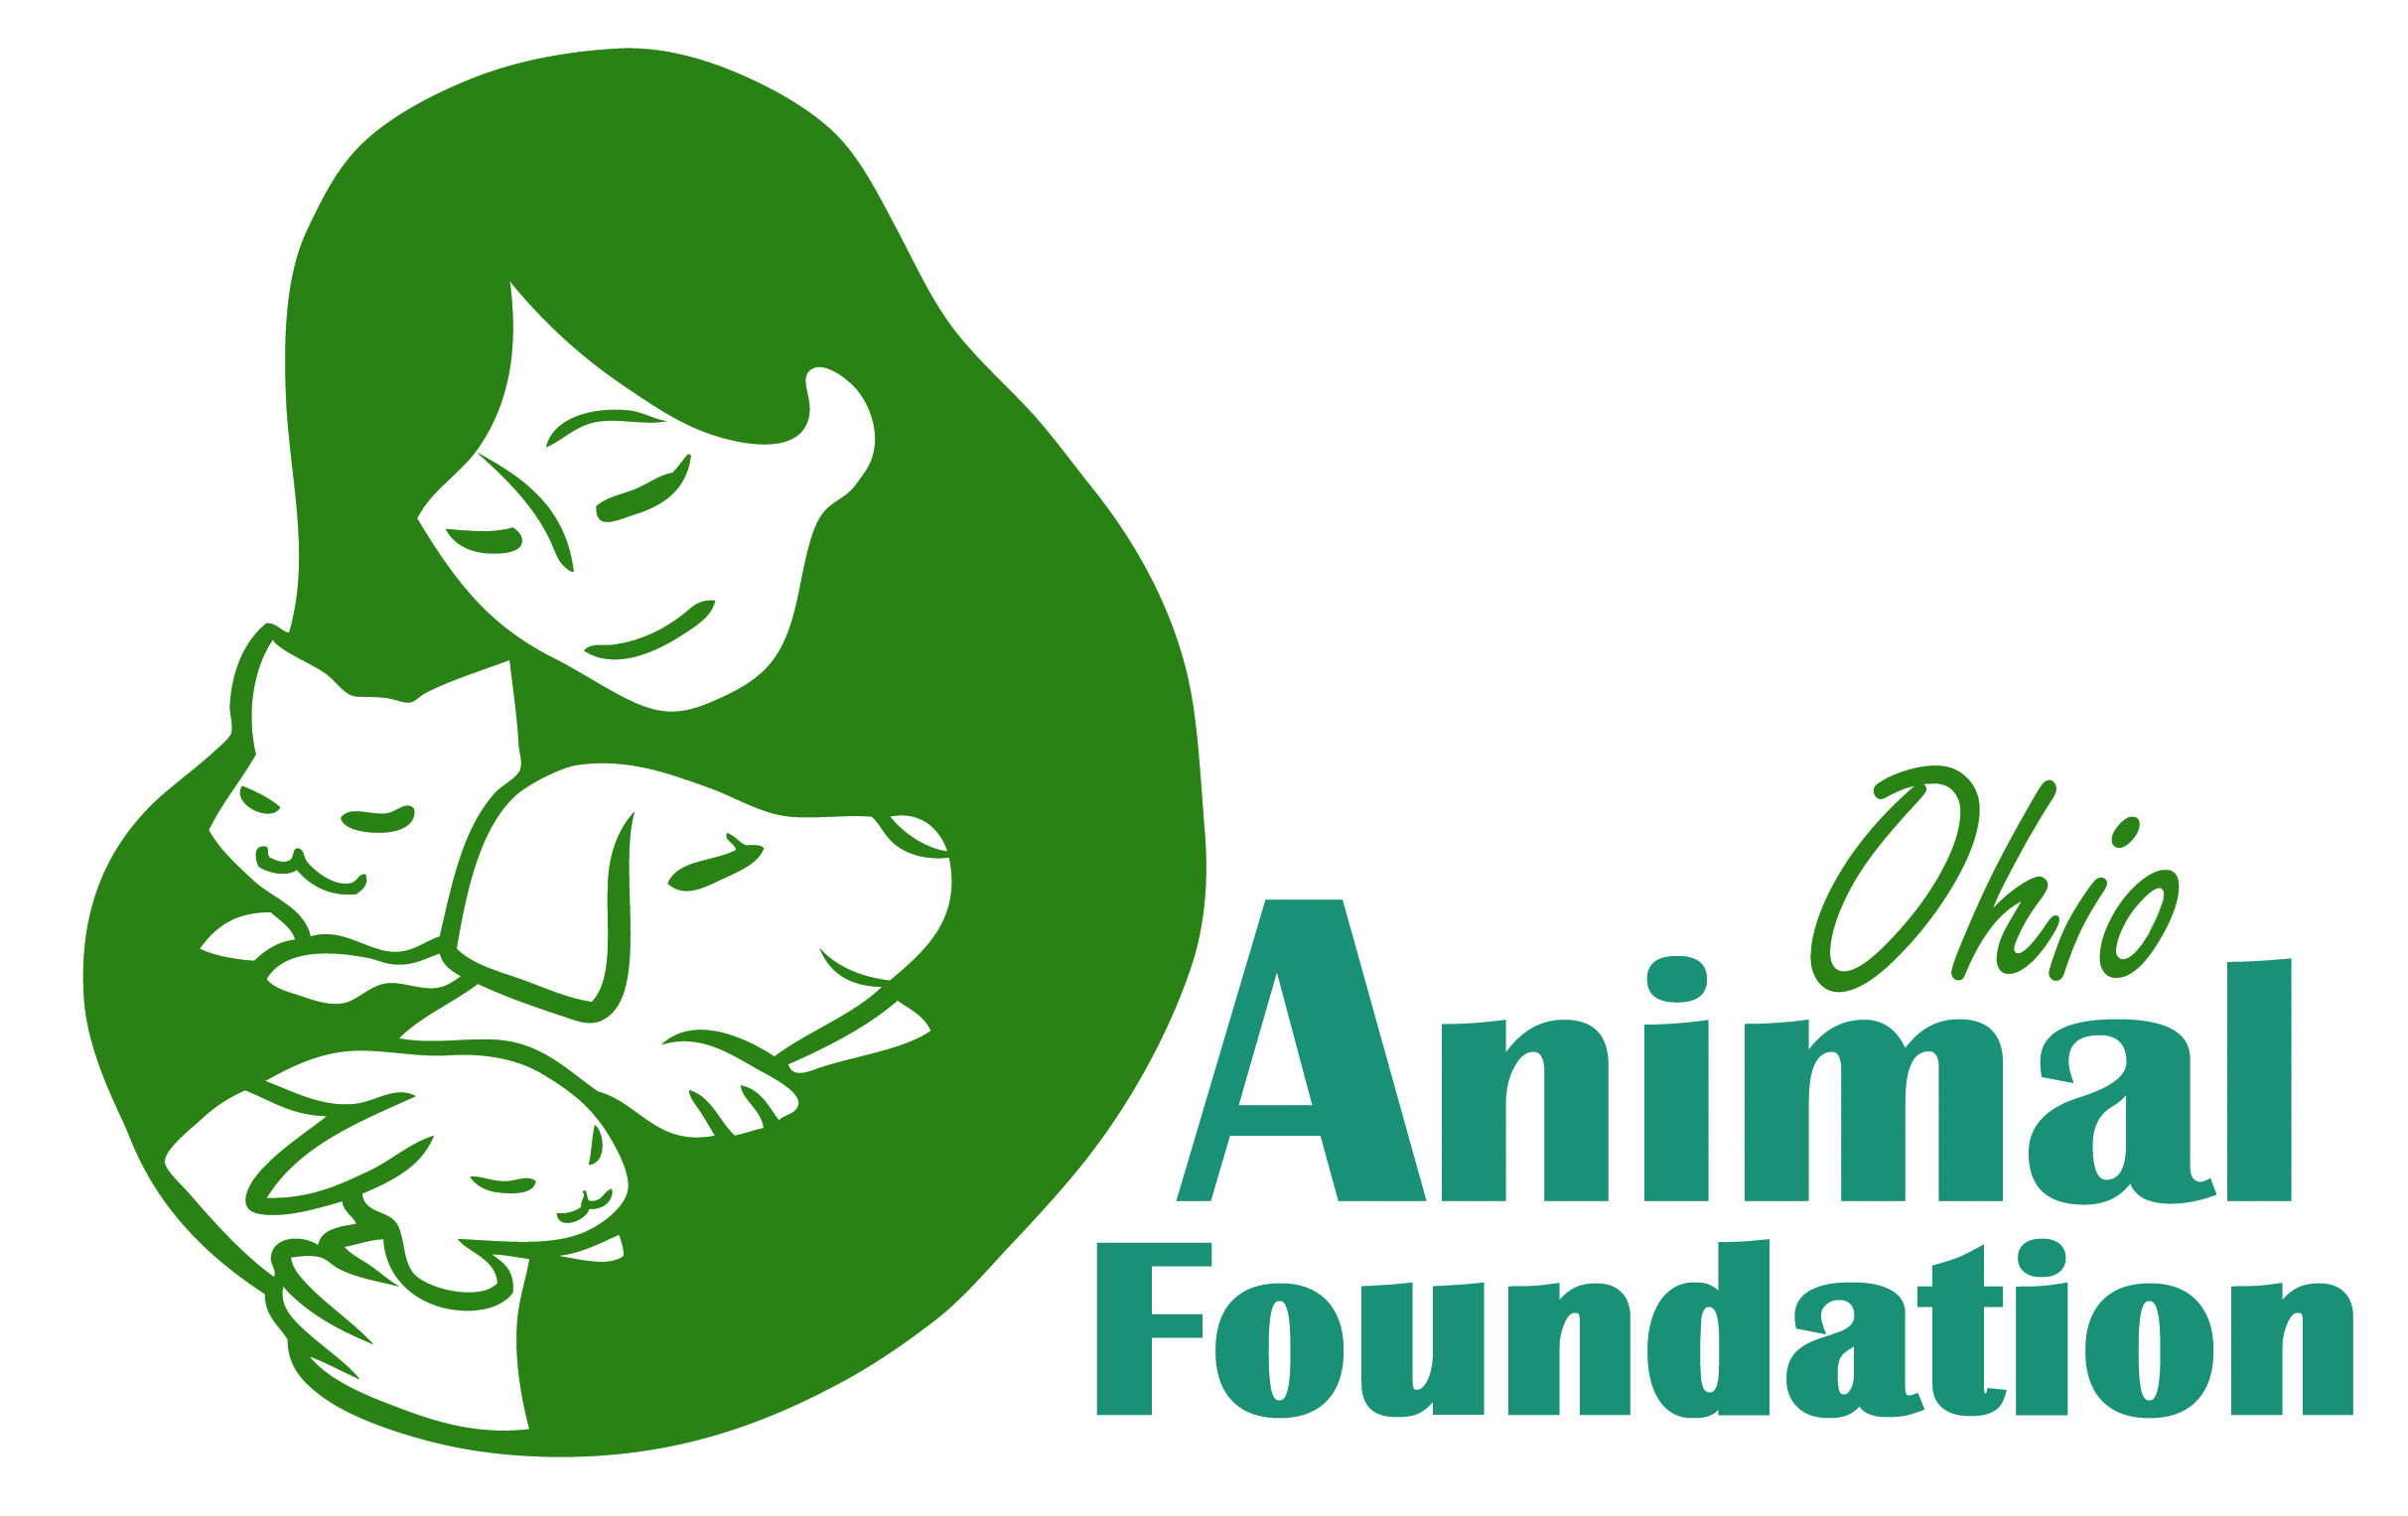 Ohio Animal Foundation logo